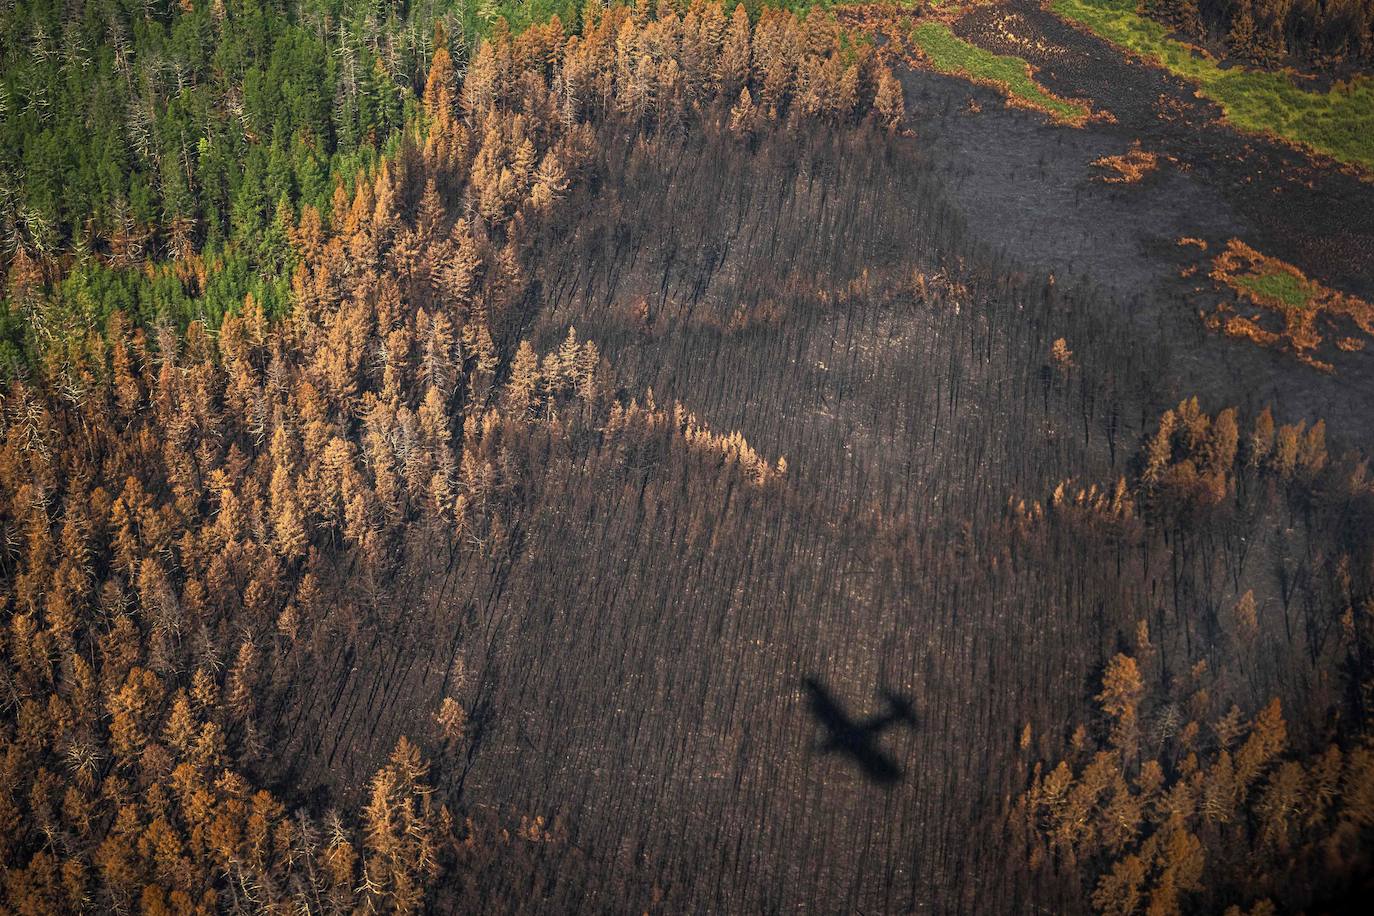 Ftografía aérea tomada el 27 de julio de 2021 muestra la sombra de un avión del Air Forest Protection Service sobrevolando un bosque quemado en la república de Sakha en las afueras del pueblo de Berdigestyakh, en la república de Sakha, Siberia. Rusia estuvo plagada de incendios forestales generalizados este verano, siendo la región de Sakha-Yakutia, en Siberia, la más afectada.